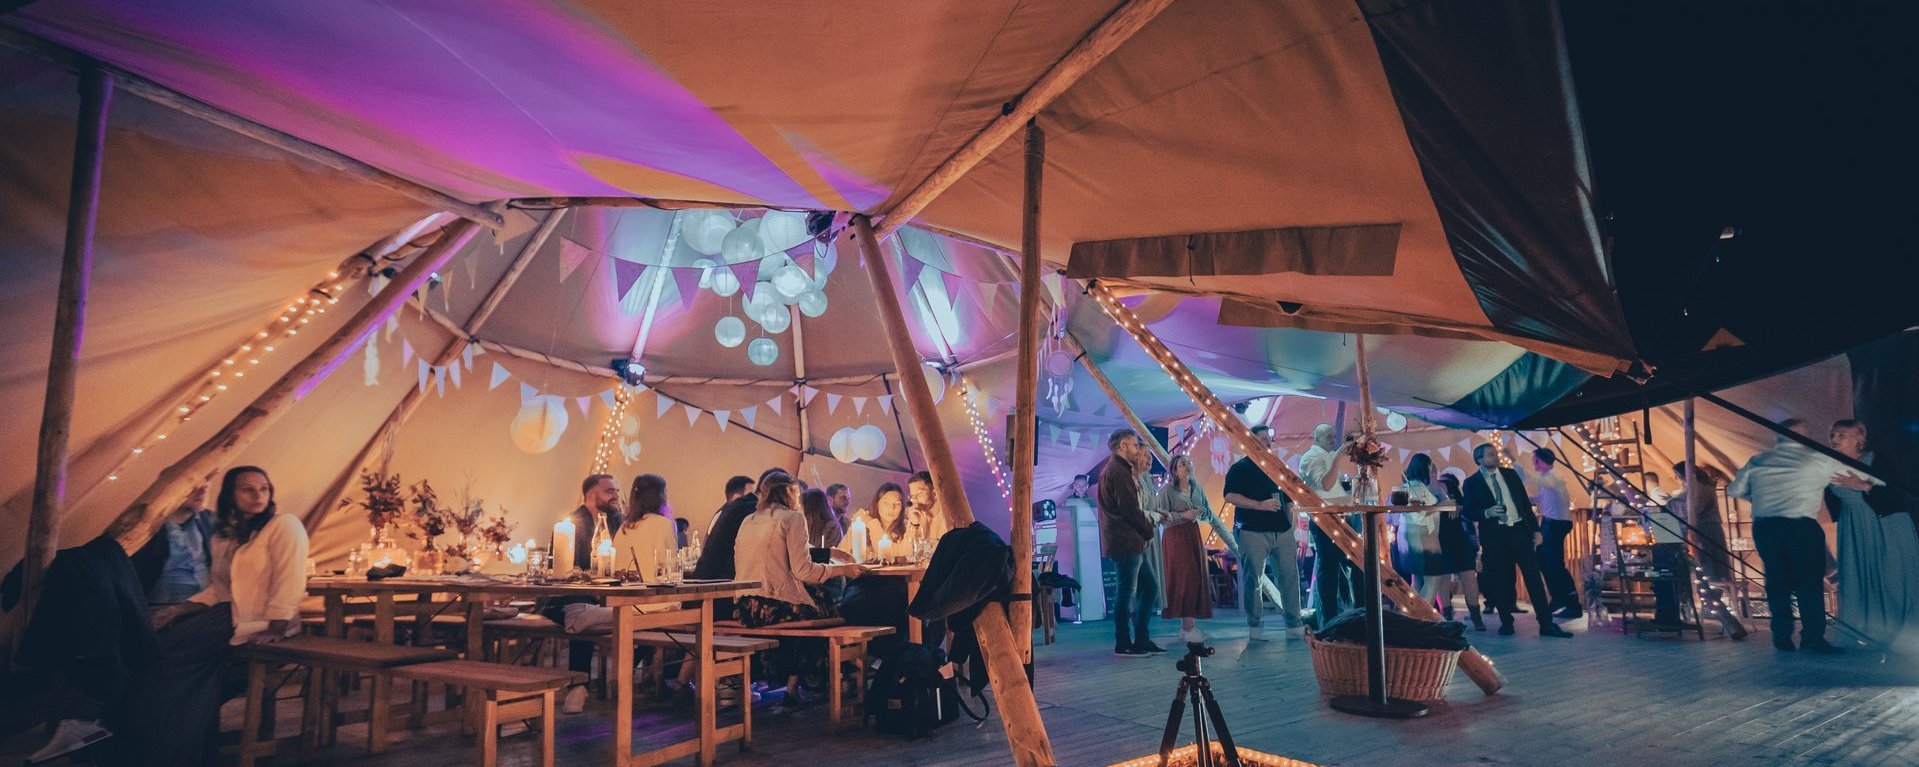 Blick ins Zelt einer Hochzeitsveranstaltung bei Nacht.